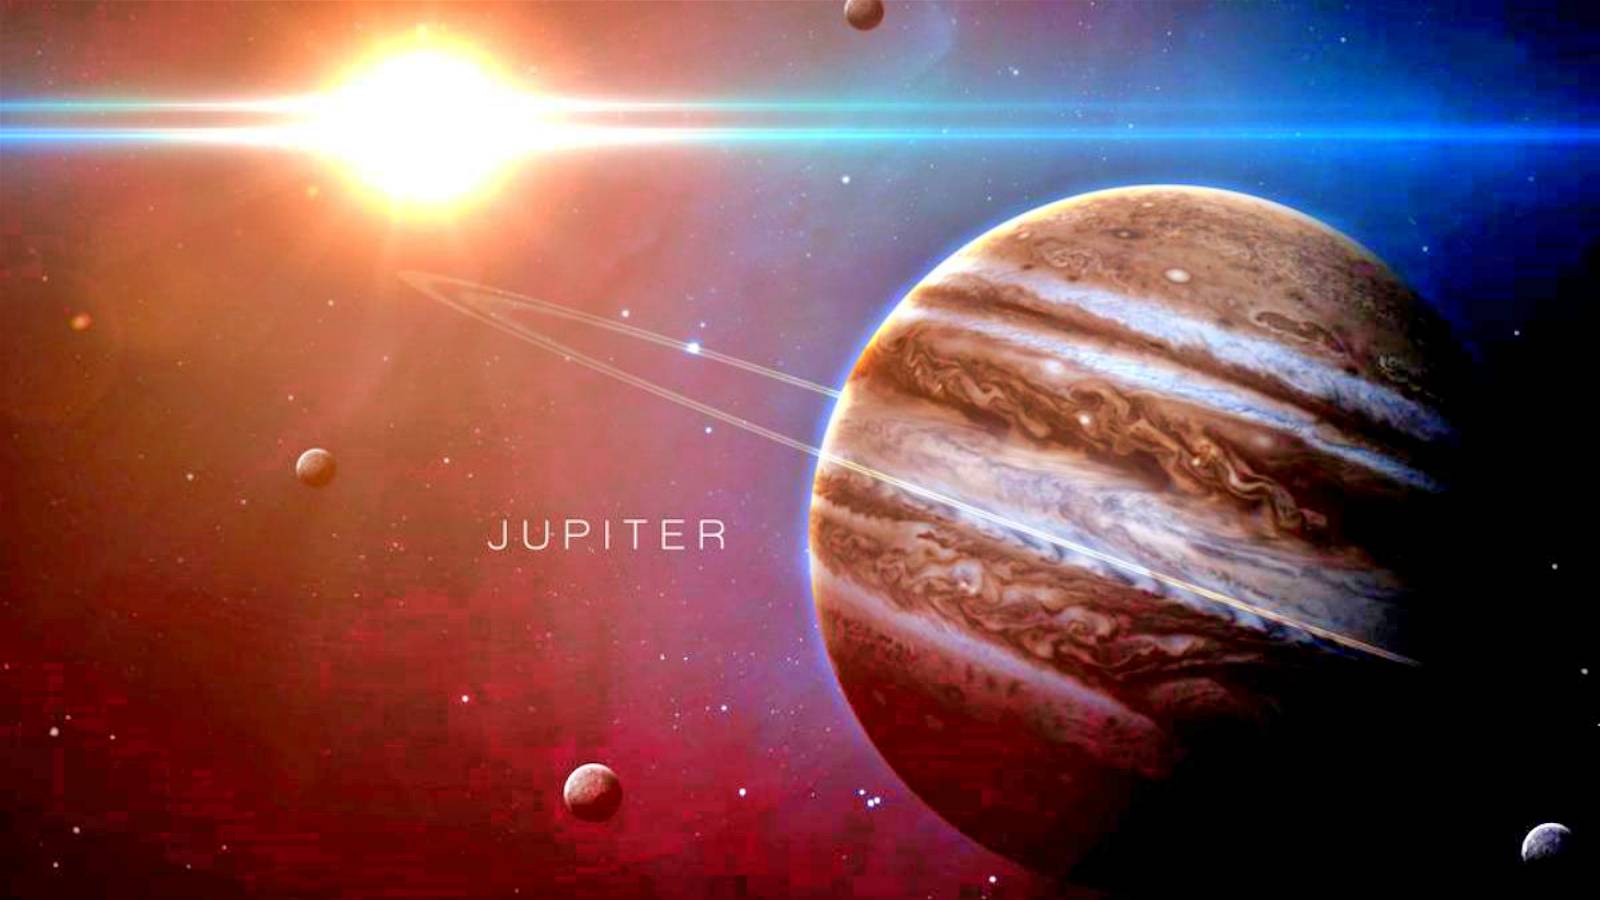 Une image impressionnante de la planète Jupiter révélée par la NASA révèle des tempêtes colossales